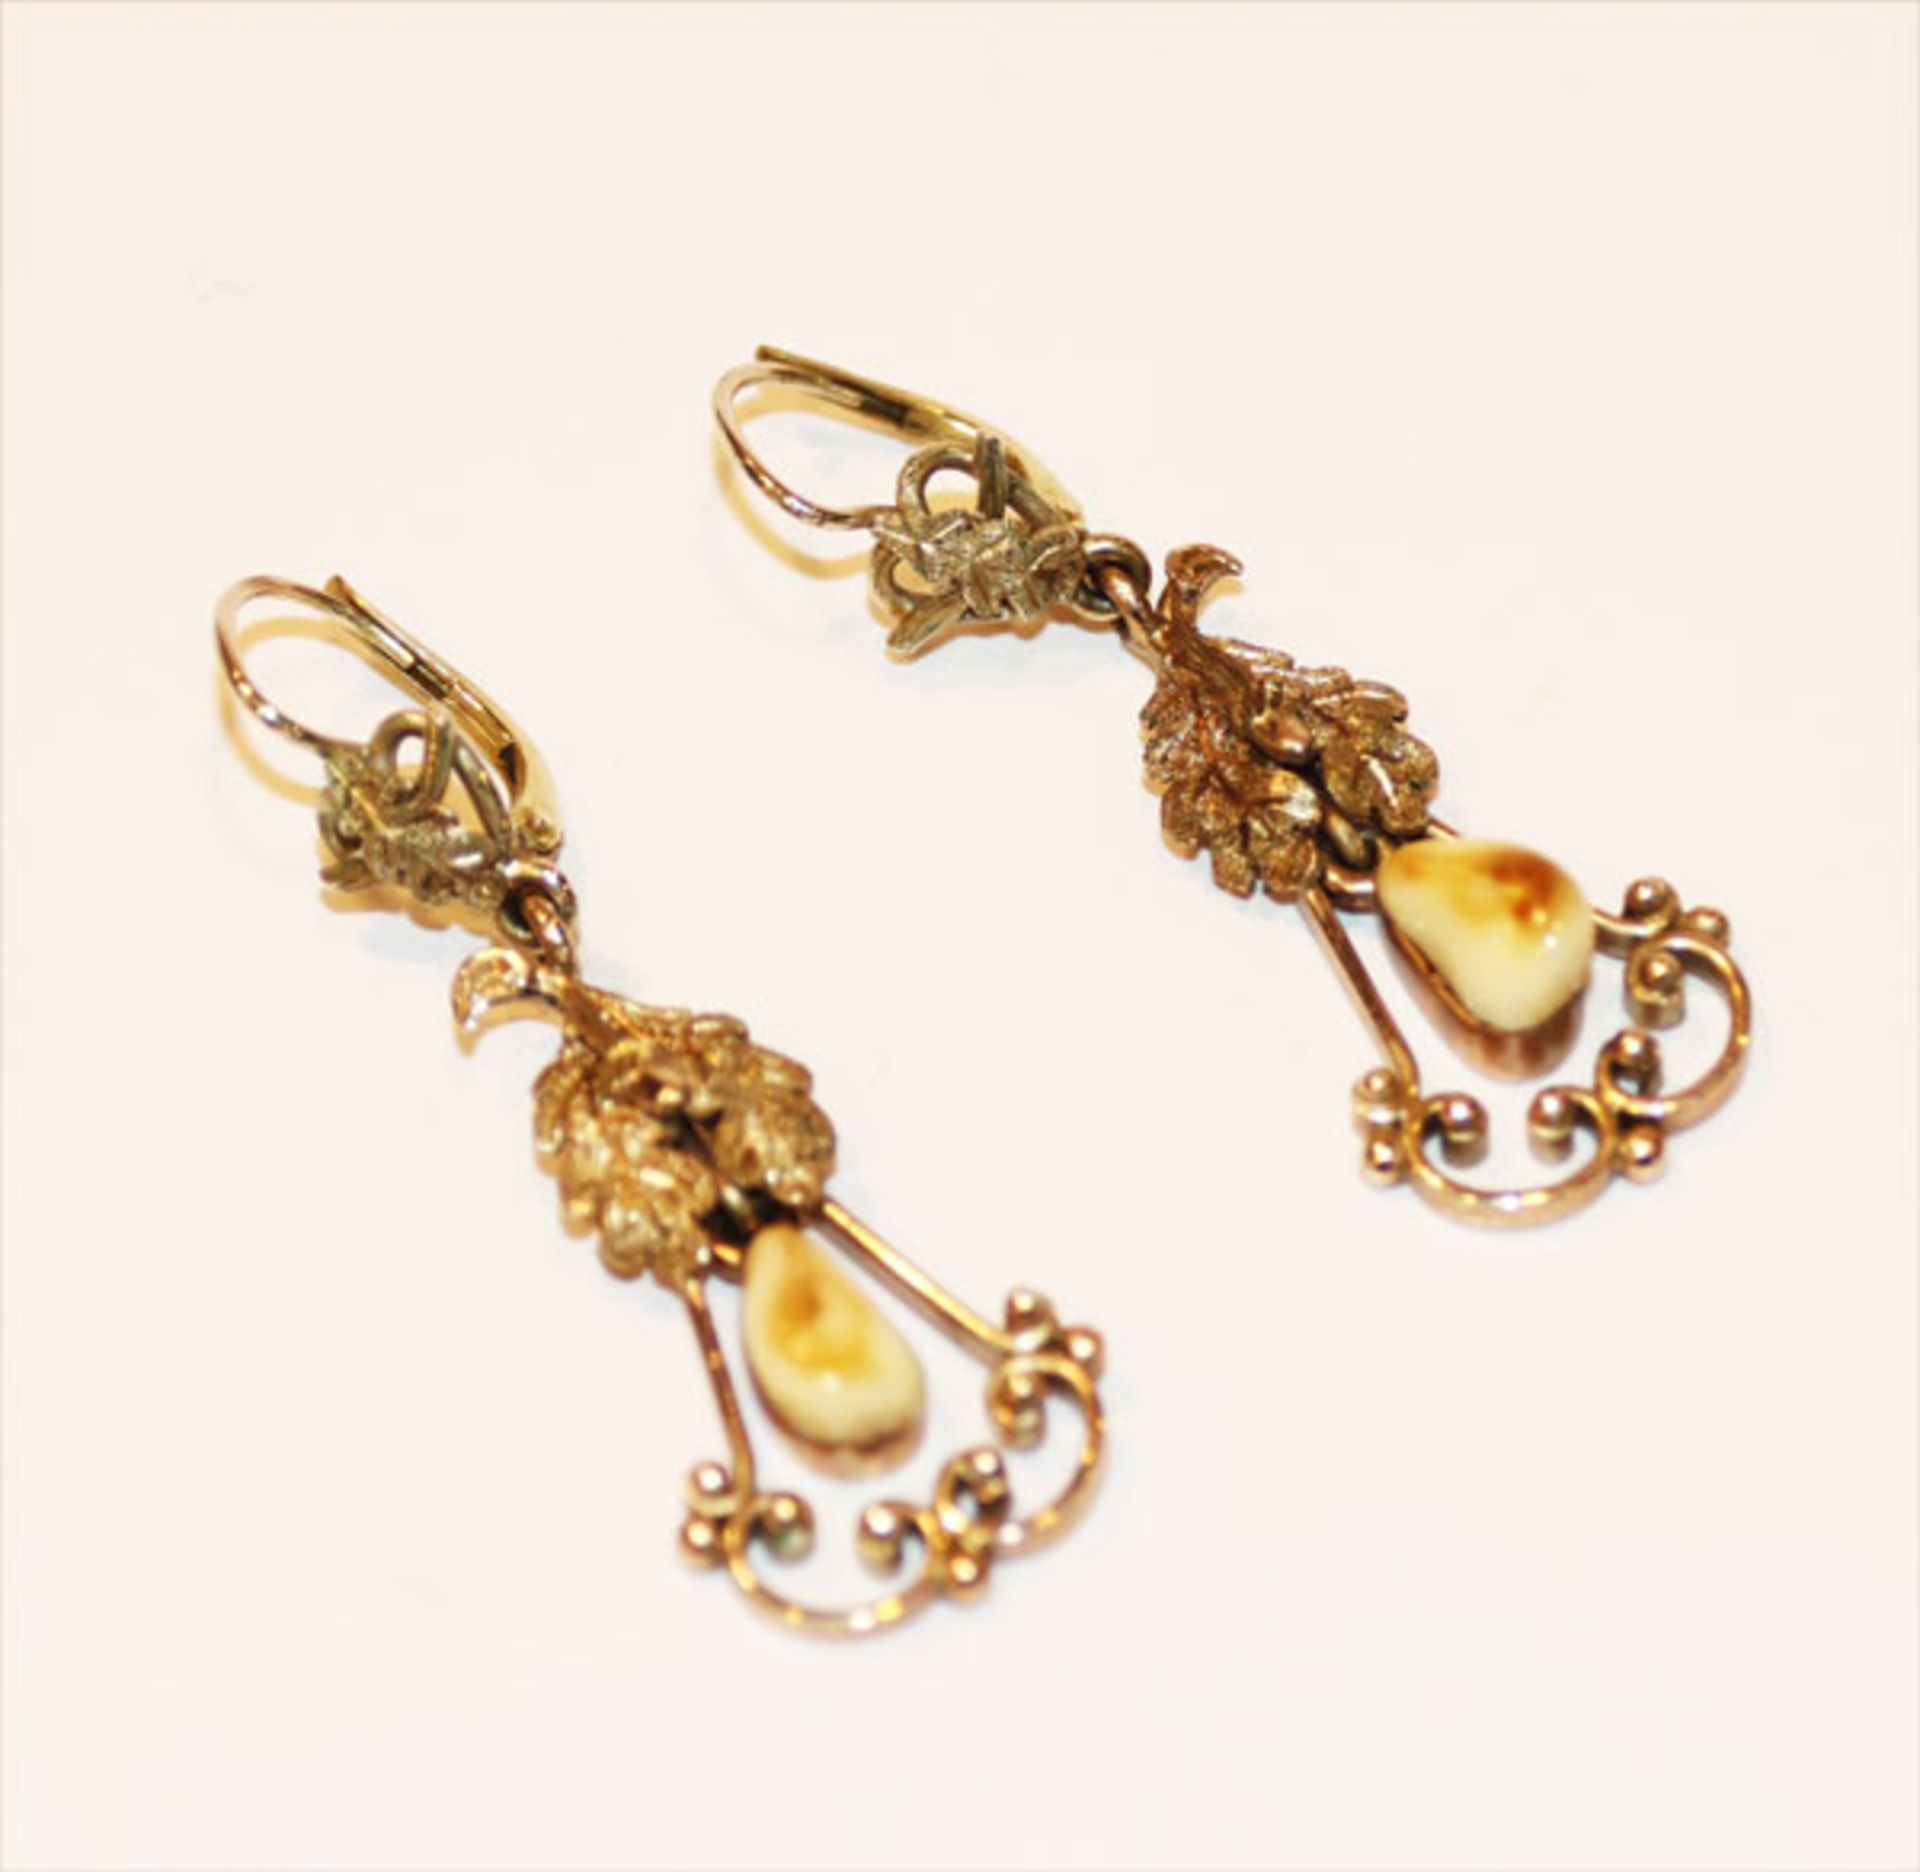 Paar 8 k Gelbgold Ohrhänger mit Grandeln und plastischem Eichenlaub, feine Handarbeit, L 4,5 cm